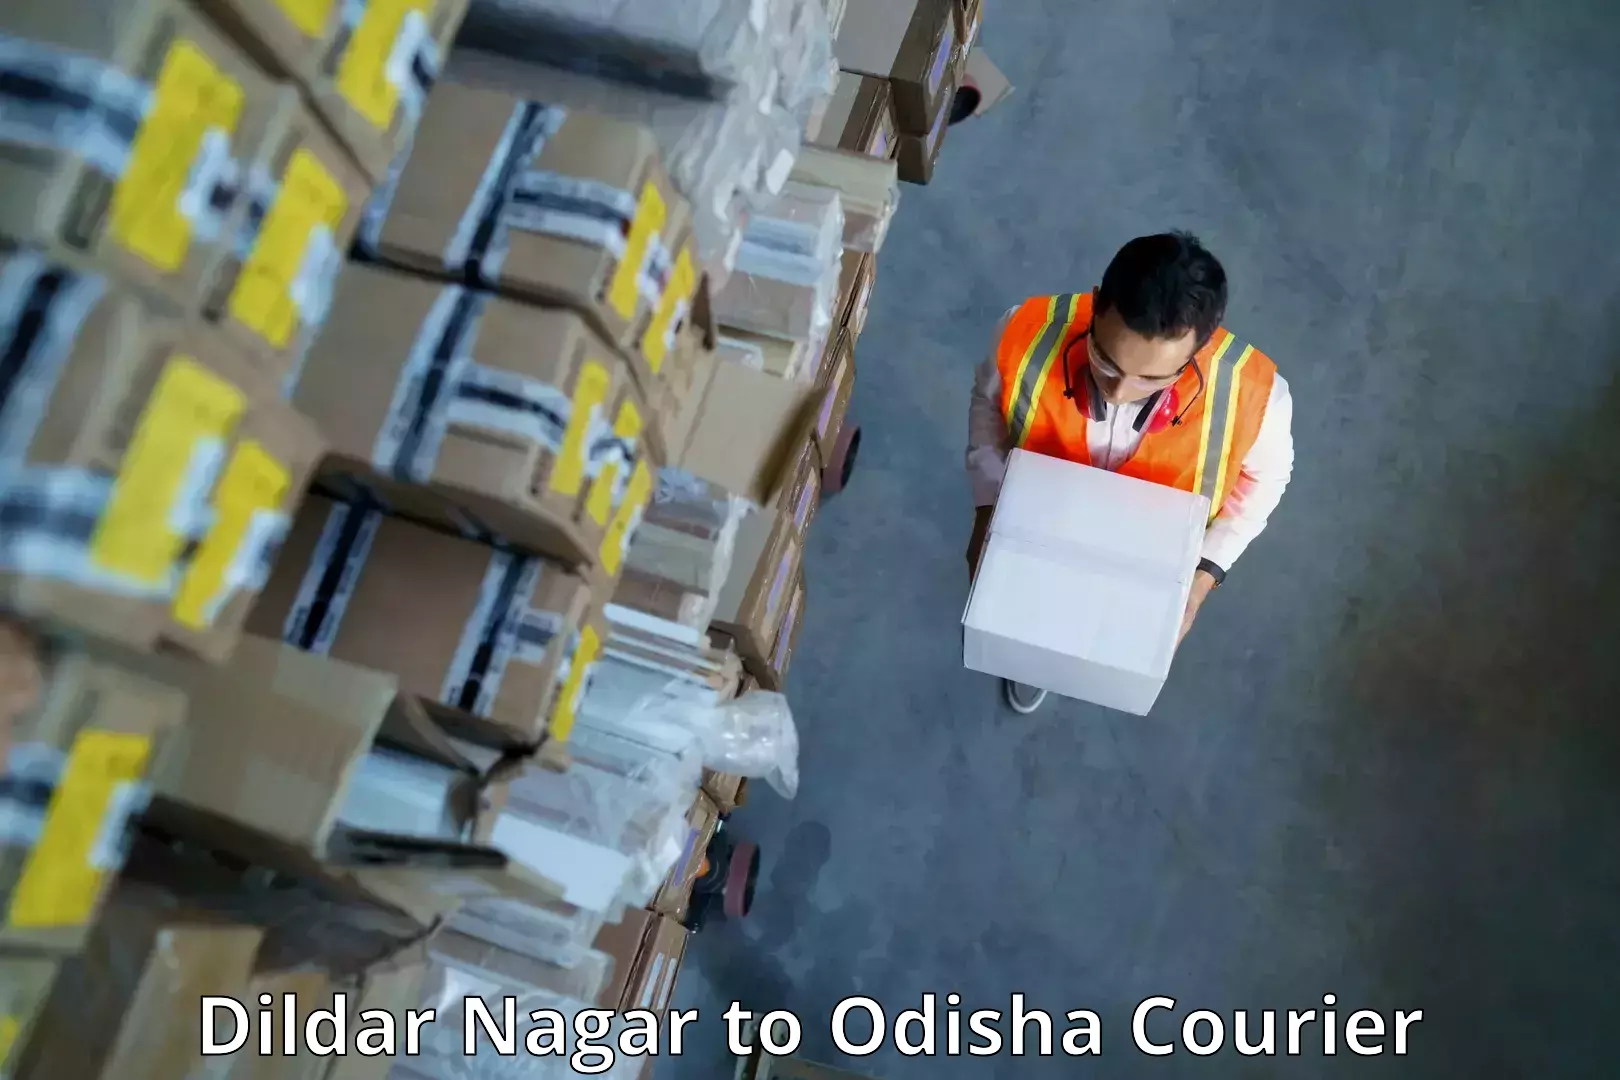 Comprehensive parcel tracking Dildar Nagar to Bargarh